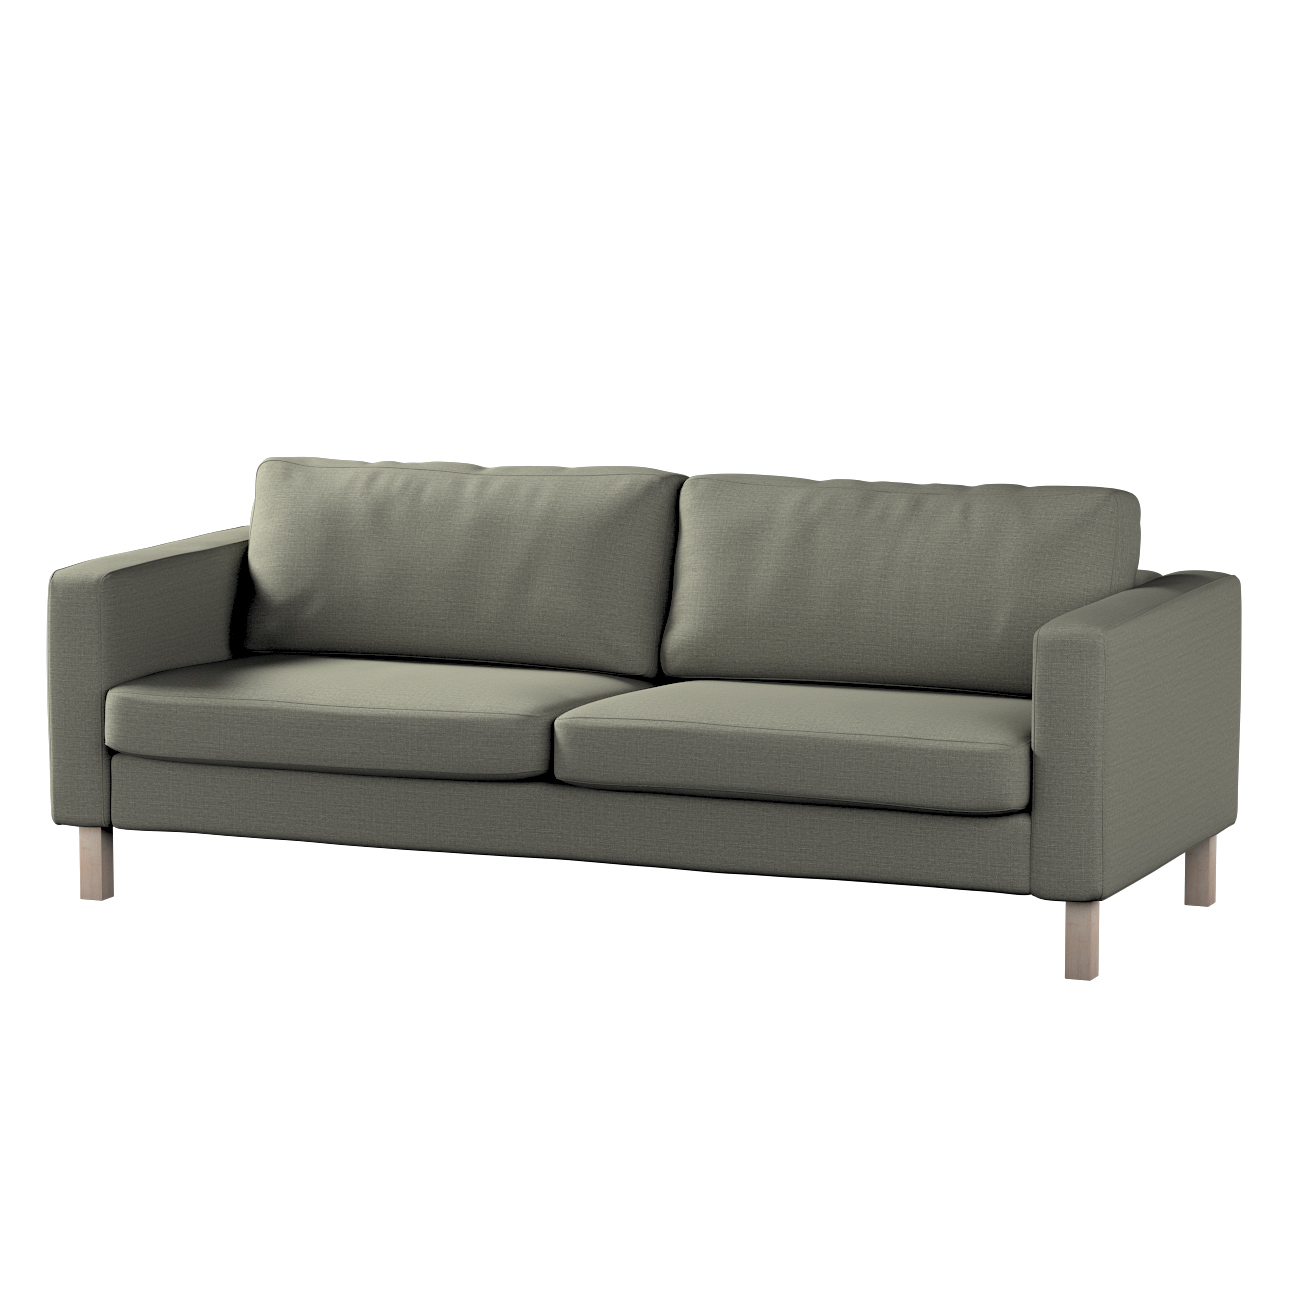 Bezug für Karlstad 3-Sitzer Sofa nicht ausklappbar, kurz, grau-beige, Bezug günstig online kaufen